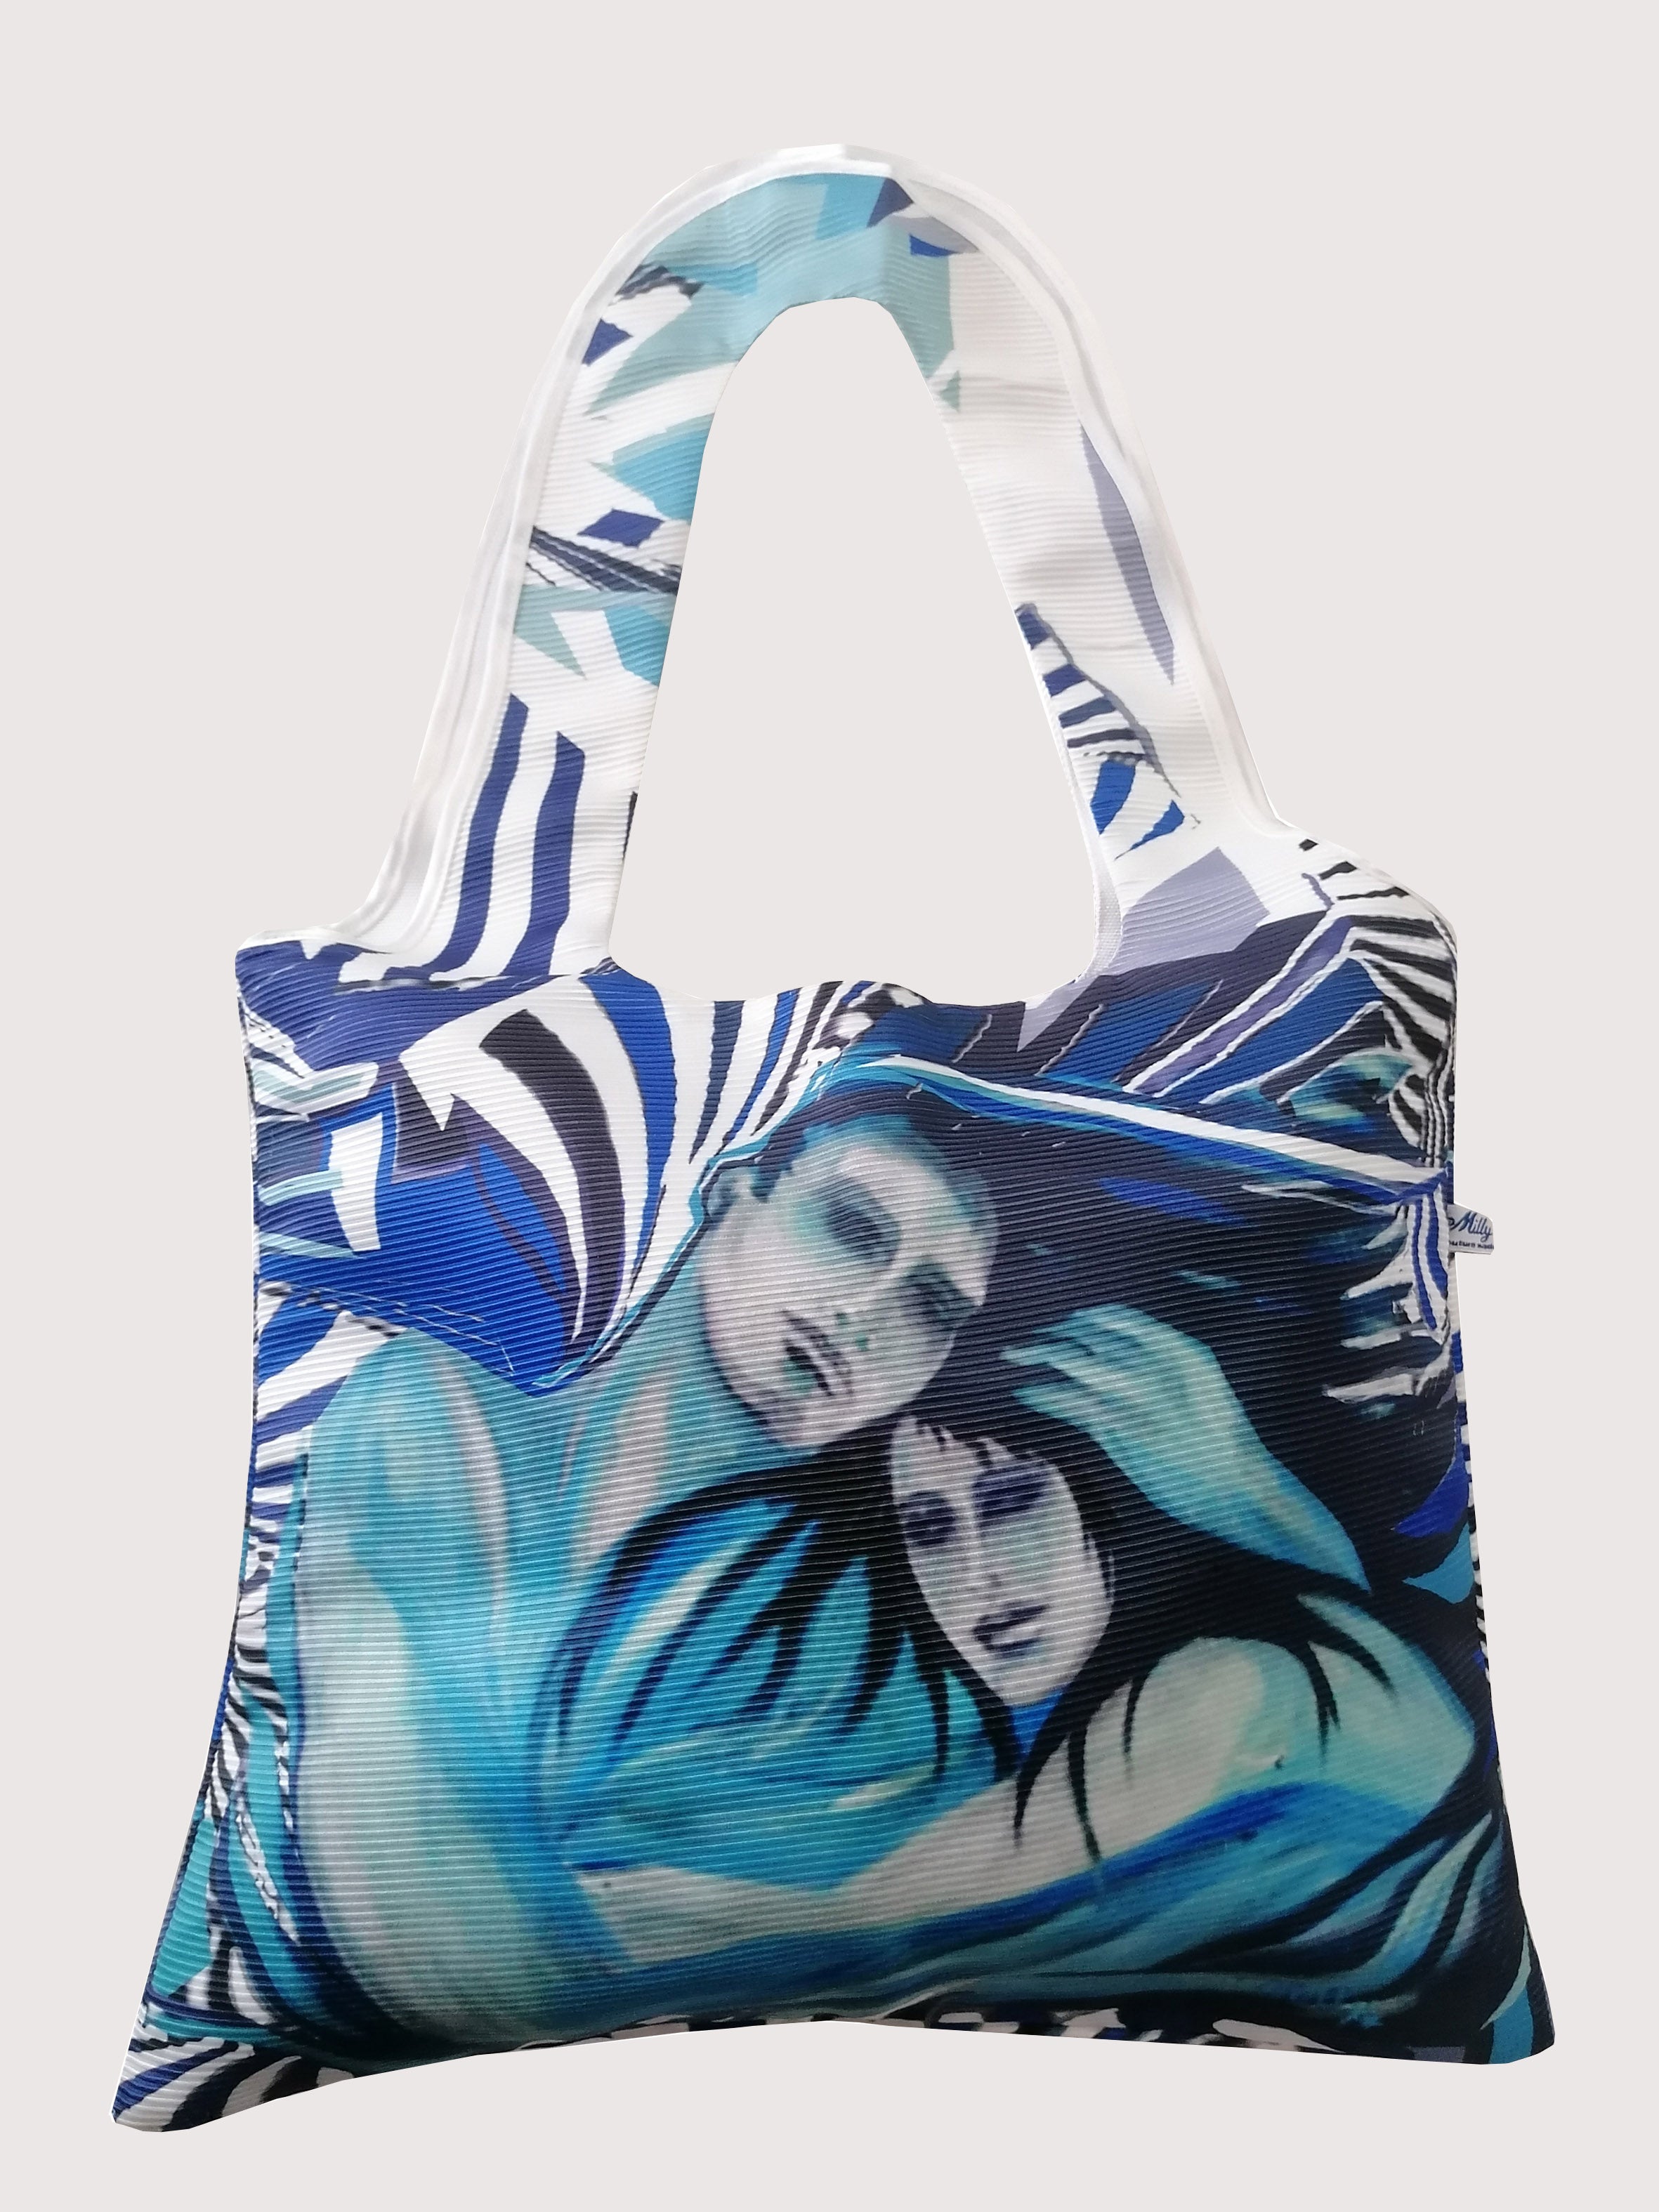 Borsa in tessuto blu con stampa dal dipinto "Non Lasciarmi". Può essere utilizzata come borsa mare o borsa piscina per un outfit glamour, raffinato e originale. I dipinti su stoffa sono un must Millyblu.